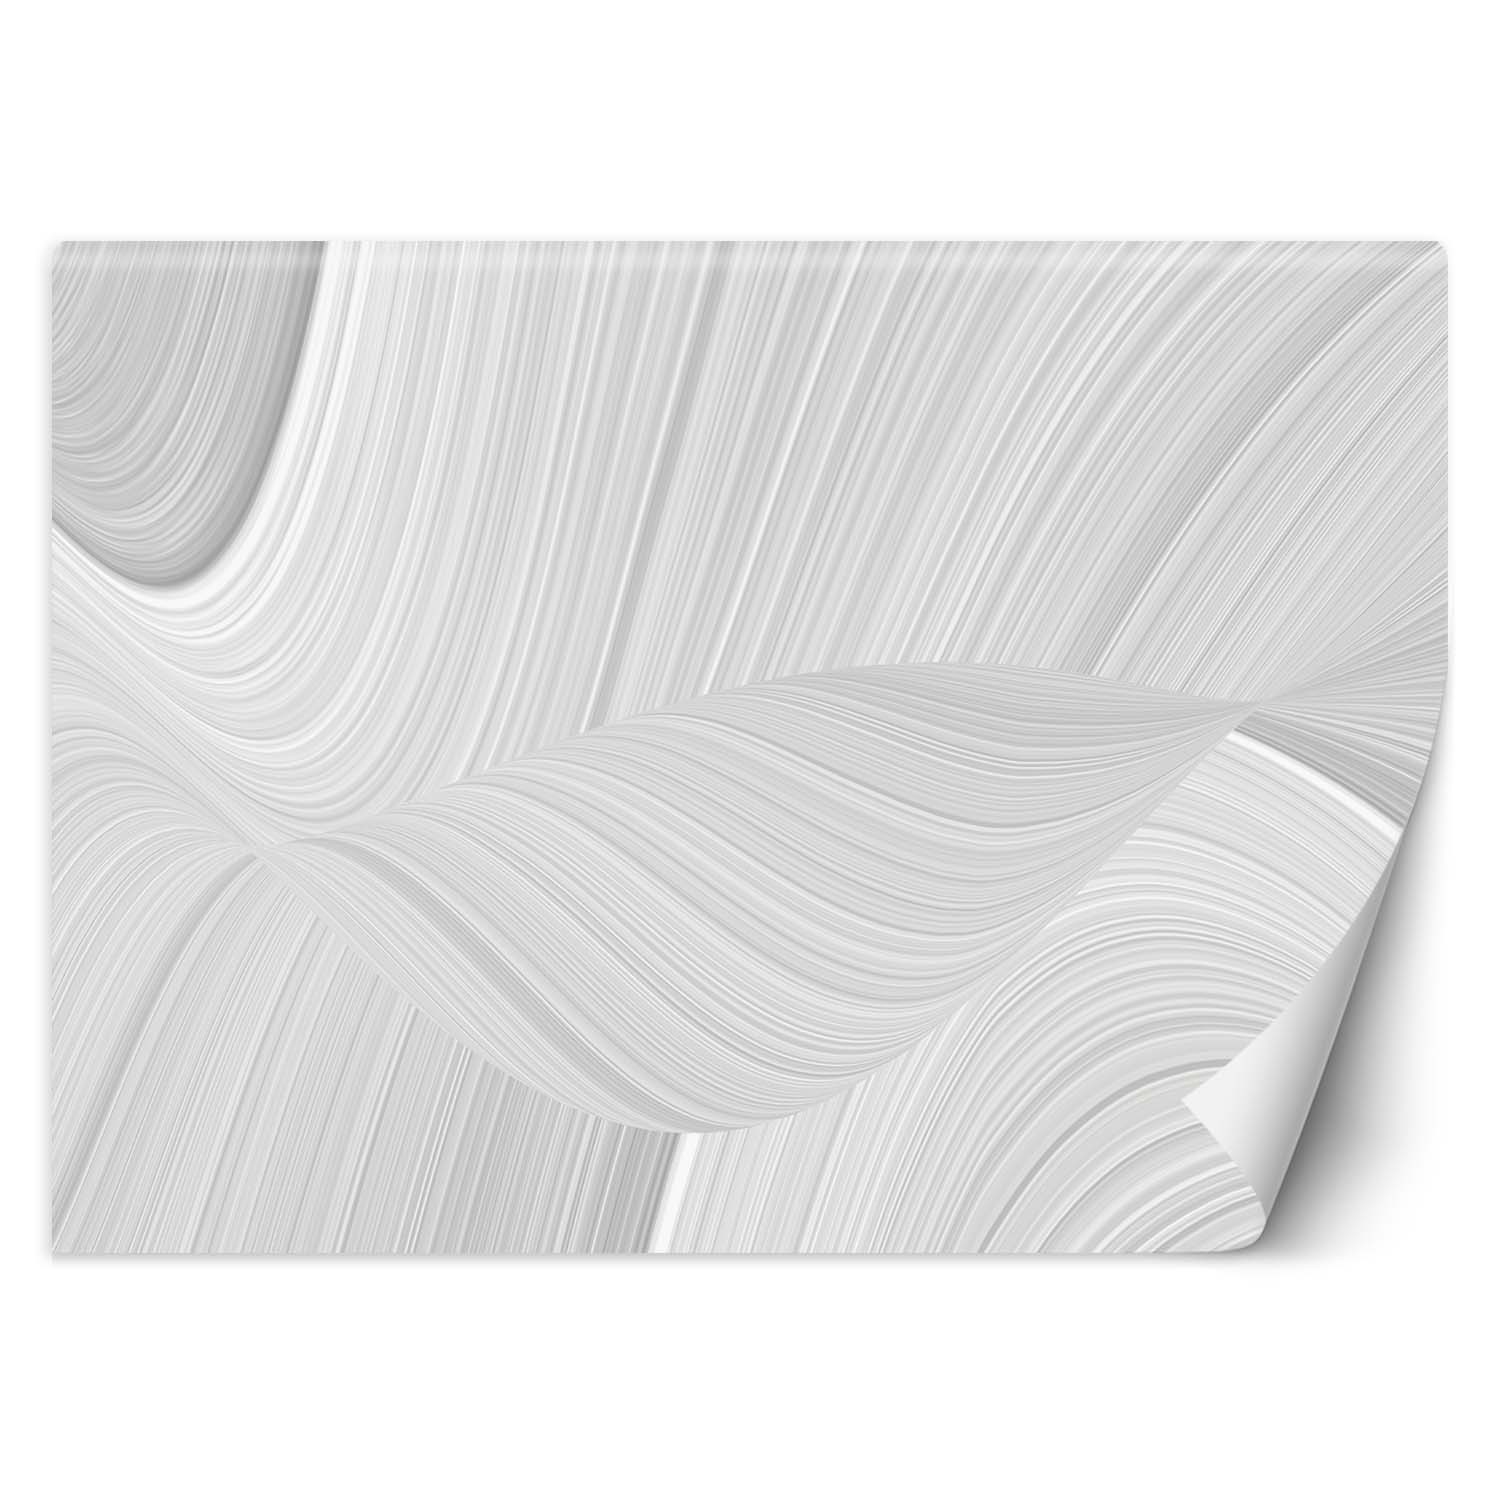 Trend24 – Behang – Texture Blur – Vliesbehang – Fotobehang 3D – Behang Woonkamer – 350x245x2 cm – Incl. behanglijm